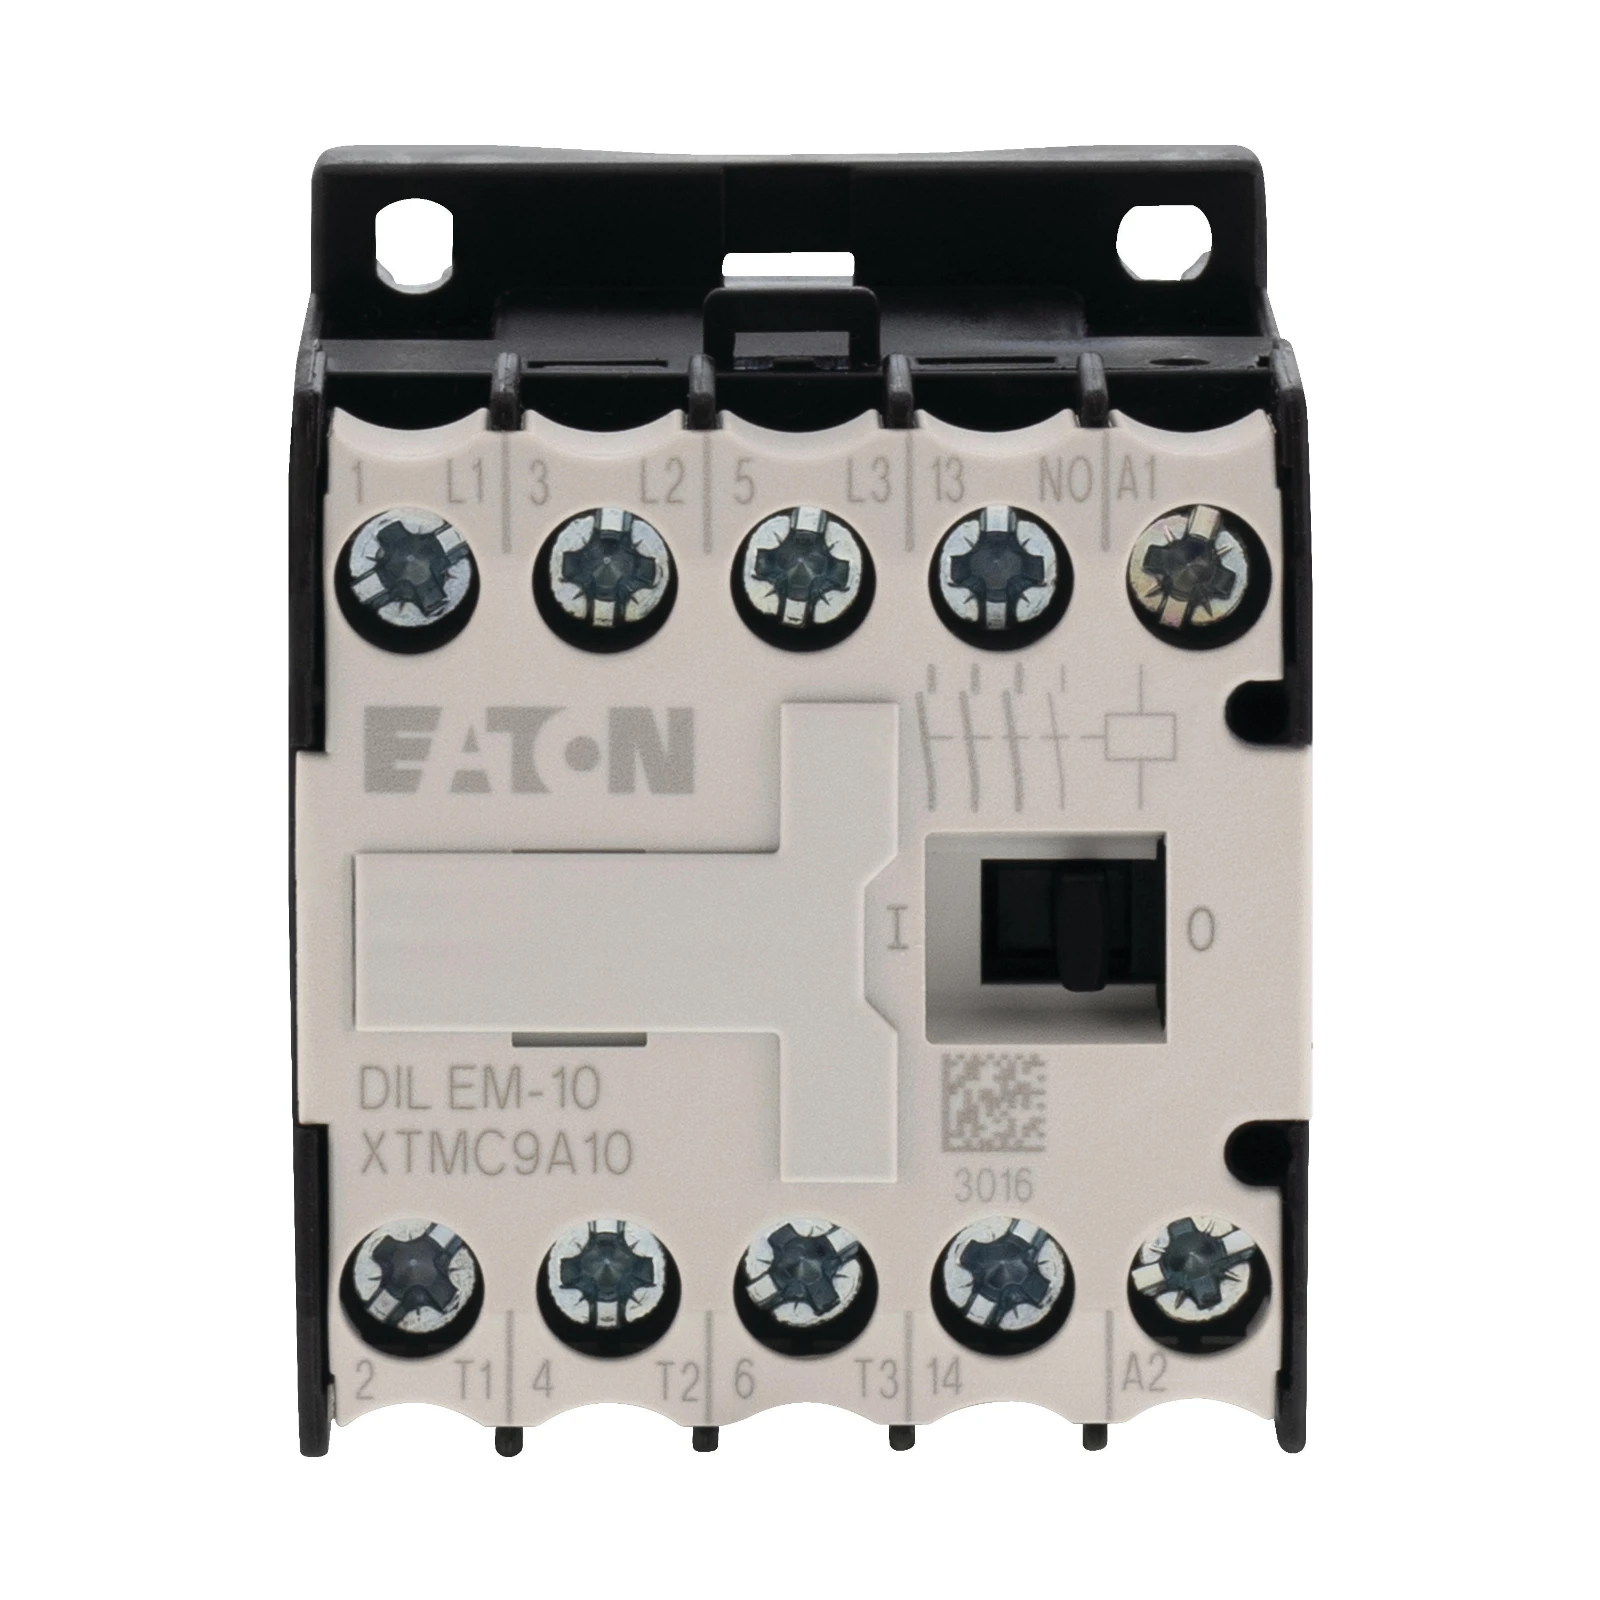 2060806 - Eaton DILEM-10-G(110VDC)